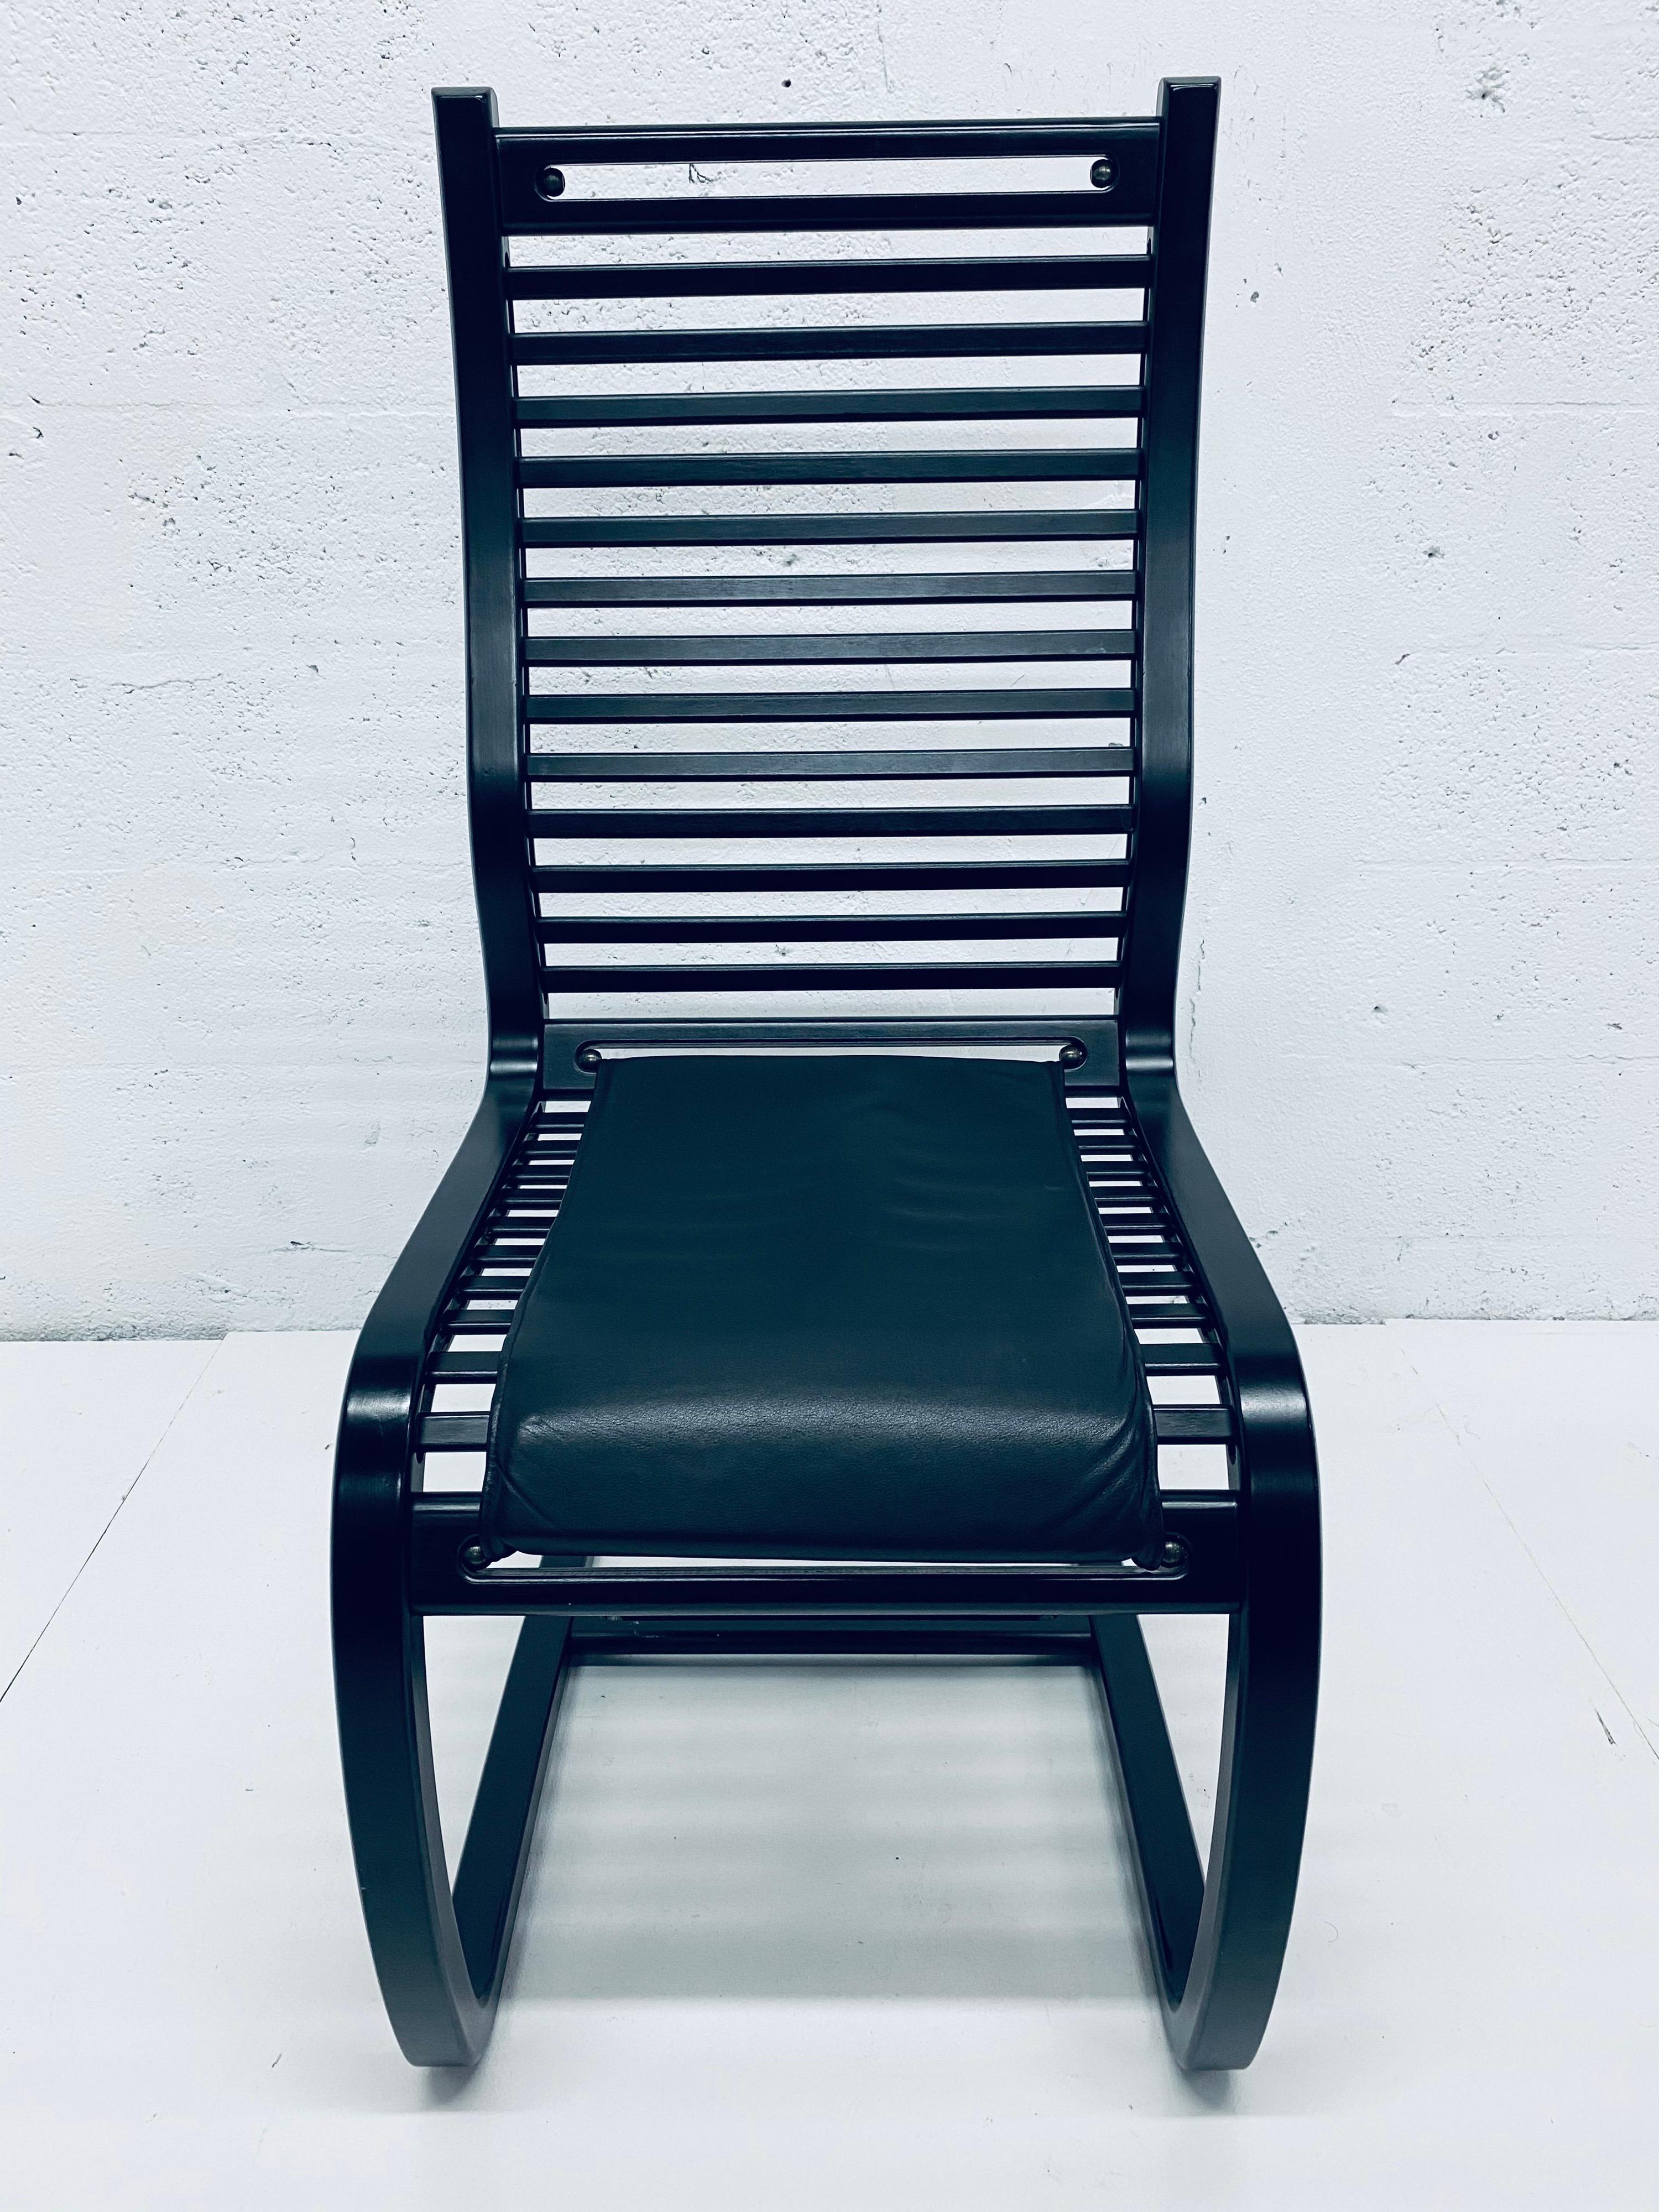 Six chaises de salle à manger en porte-à-faux en lattes de bois teinté ébène avec coussins en Naugahyde noir, conçues par Terje Hope pour Westnofa, années 1980.  Design très confortable basé sur la période Bauhaus / Art déco et Memphis Milano.